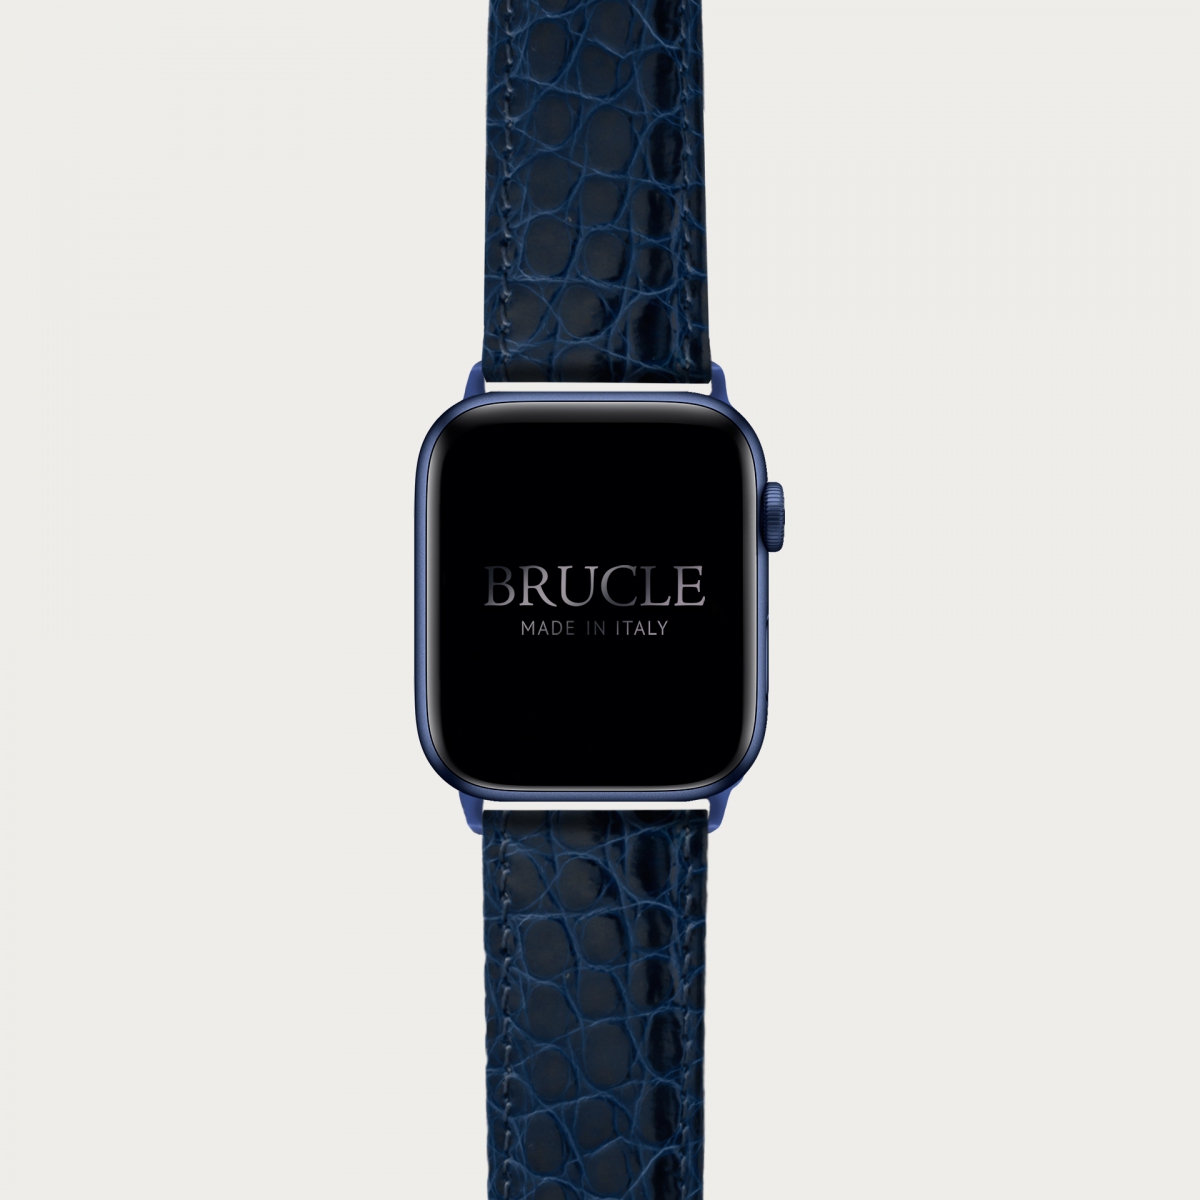 BRUCLE Correa de reloj en genuino caimán compatible con Apple Watch / Samsung smartwatch, navy blue